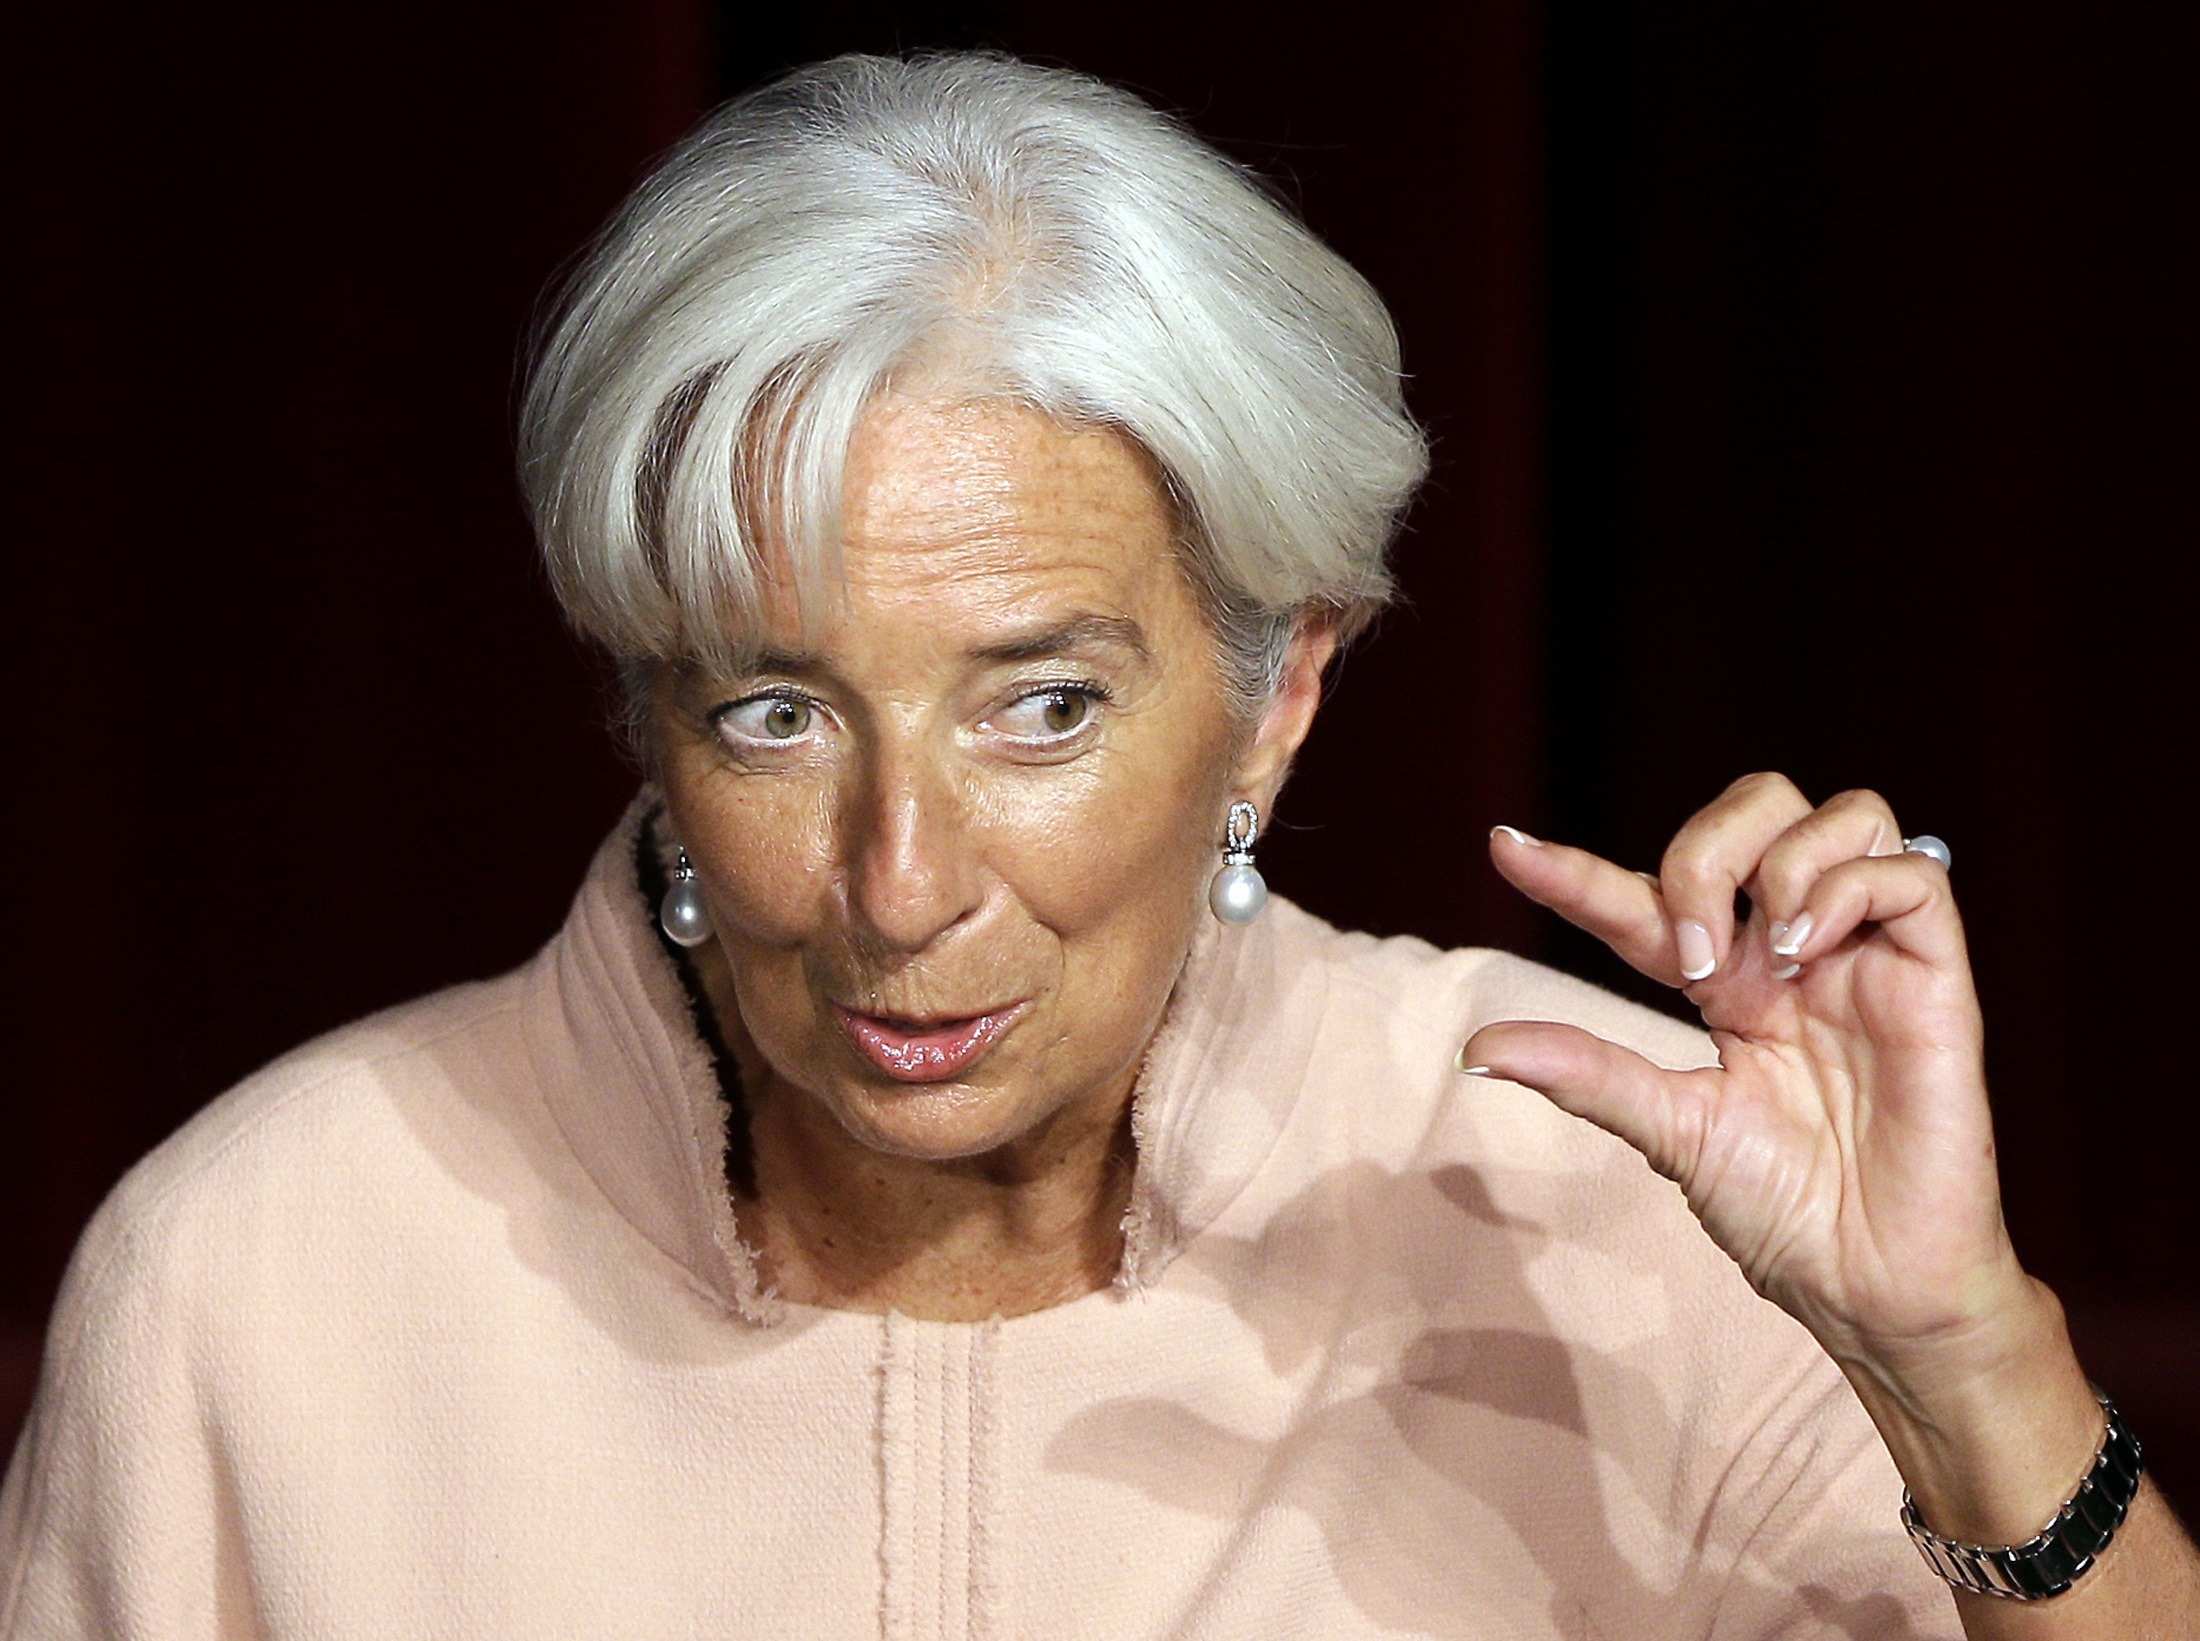 ΔΝΤ: Ποια συμφωνία; Οι διαπραγματεύσεις συνεχίζονται